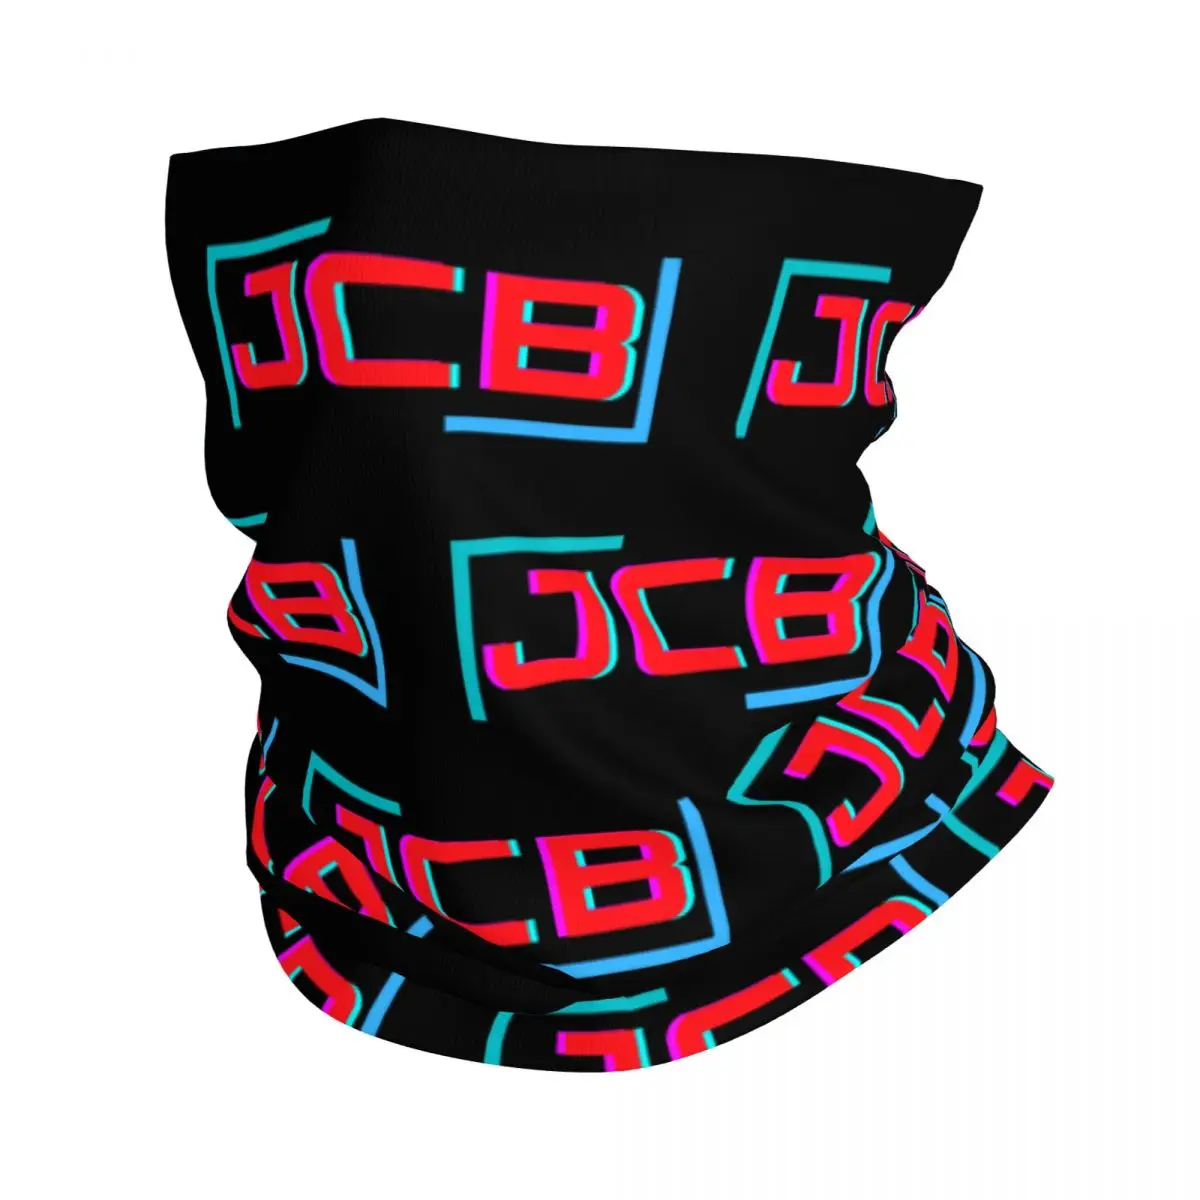 

Бандана Jcb с логотипом «сделай сам», Шейная гетра с принтом, Балаклава, шарф, теплая дышащая Спортивная для мужчин и взрослых, для велоспорта и занятий на открытом воздухе